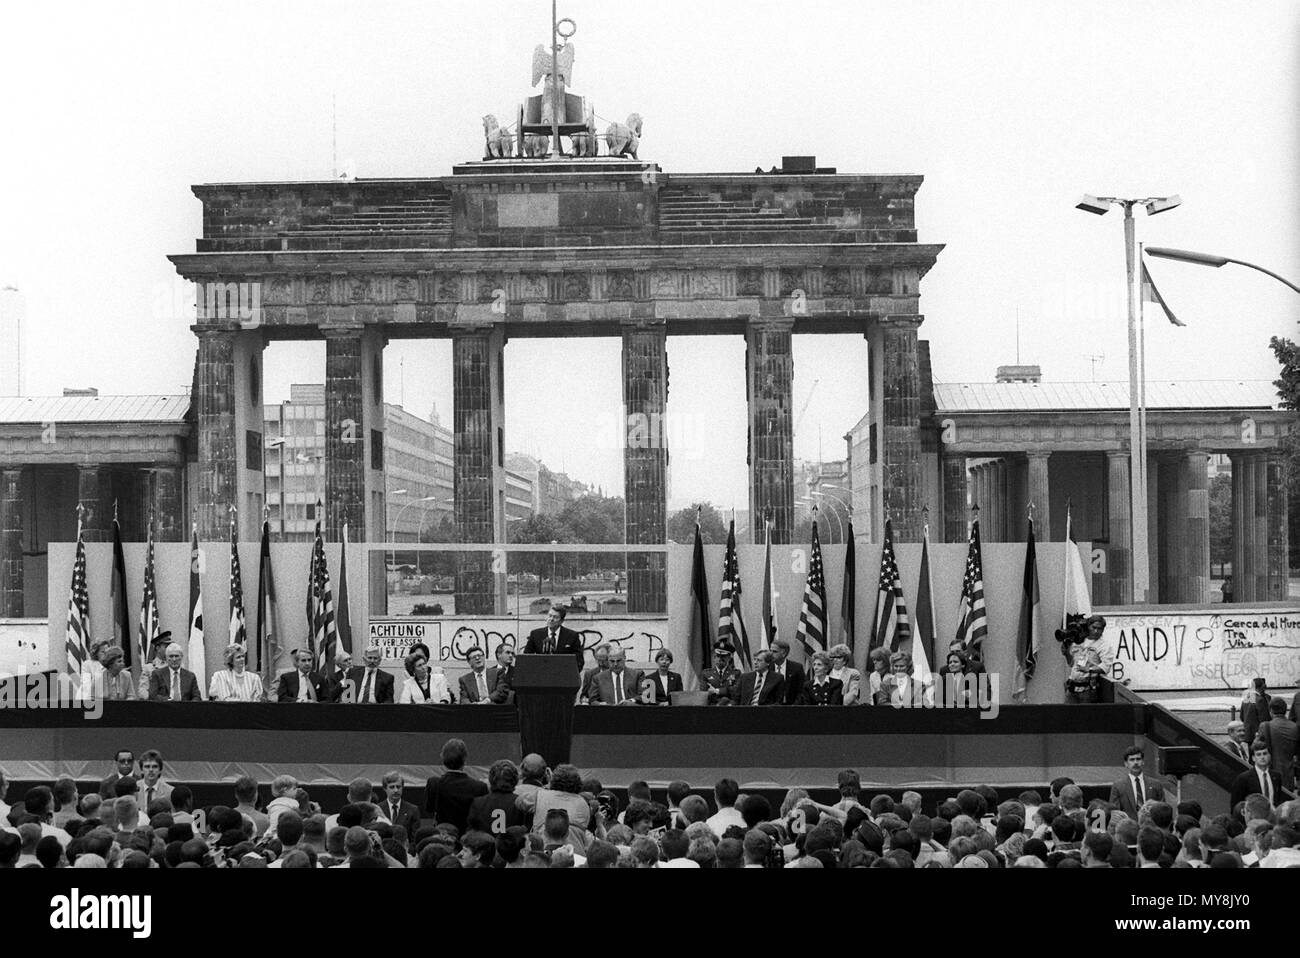 El presidente estadounidense Ronald Reagan (C) da un discurso en el muro de Berlín por la Puerta de Brandenburgo en Berlín Occidental, el 12 de junio de 1987. A la derecha junto a él está el canciller alemán Helmut Kohl. Alrededor de 25.000 personas aclamaron sus famosas palabras 'Mr. Gorbachev, derribar este muro!" Reagan fue en Berlín durante varias horas en la ciudad del 750 aniversario. Uso | en todo el mundo Foto de stock